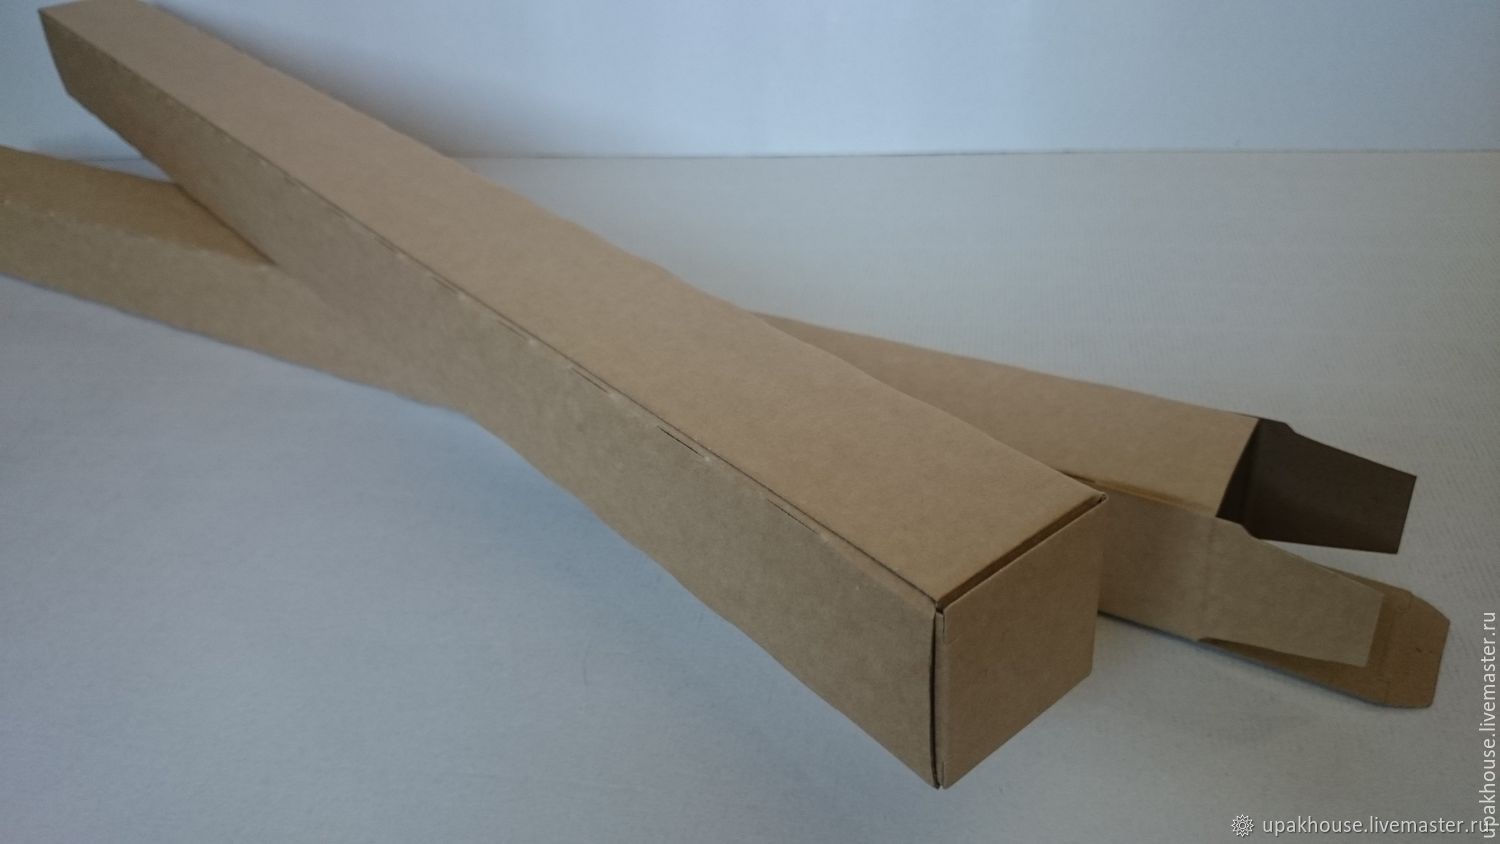 Удлиненные коробки. Коробка из микрогофрокартона 120x90x55. Длинная картонная коробка. Коробка картонная длинная узкая. Коробки узкие и длинные.